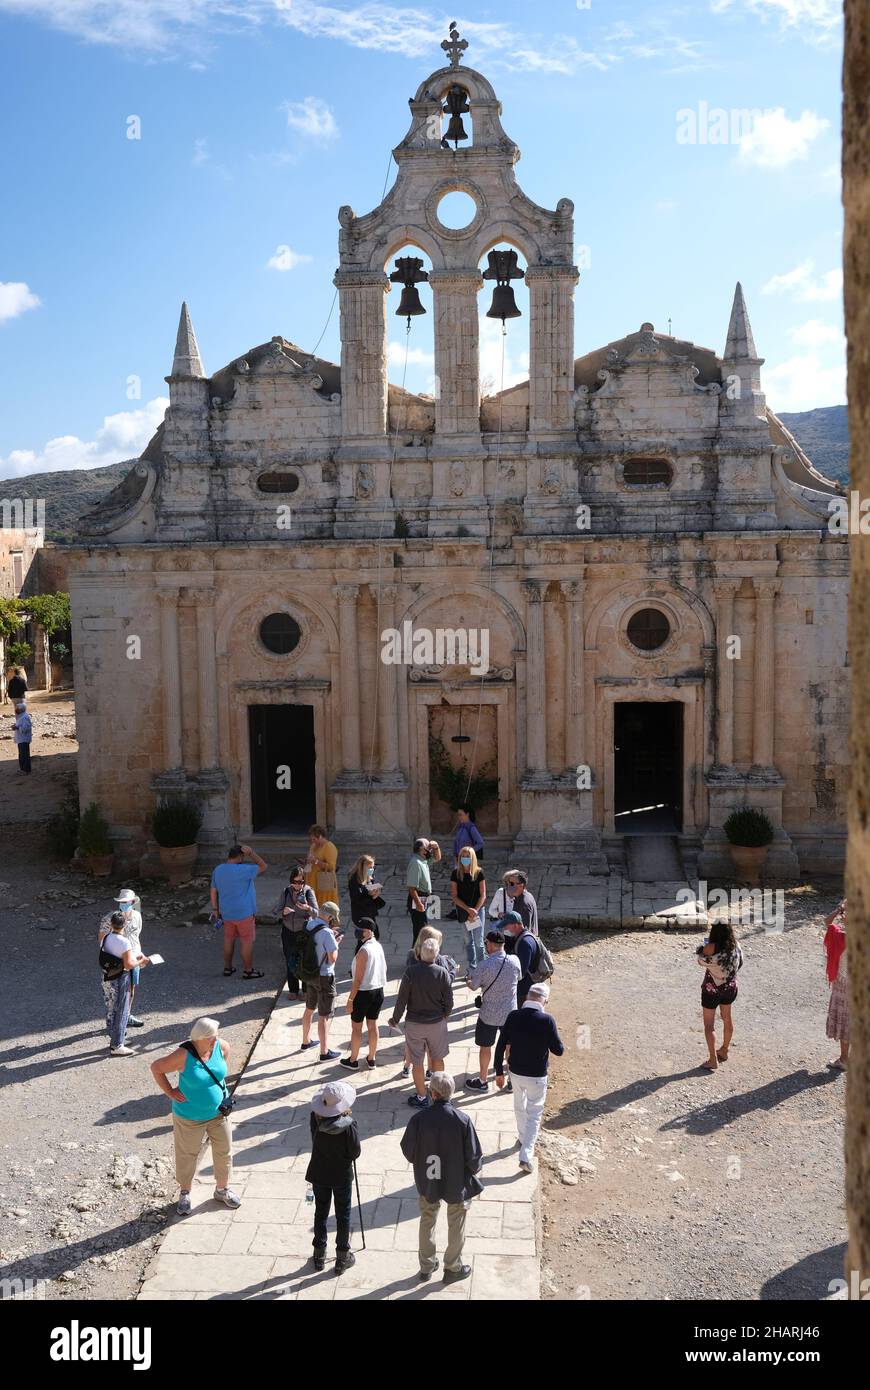 Touristen im Arkadi-Kloster, einem östlich-orthodoxen Kloster, das südöstlich von Rethymnon auf der Insel Kreta in Griechenland liegt Stockfoto